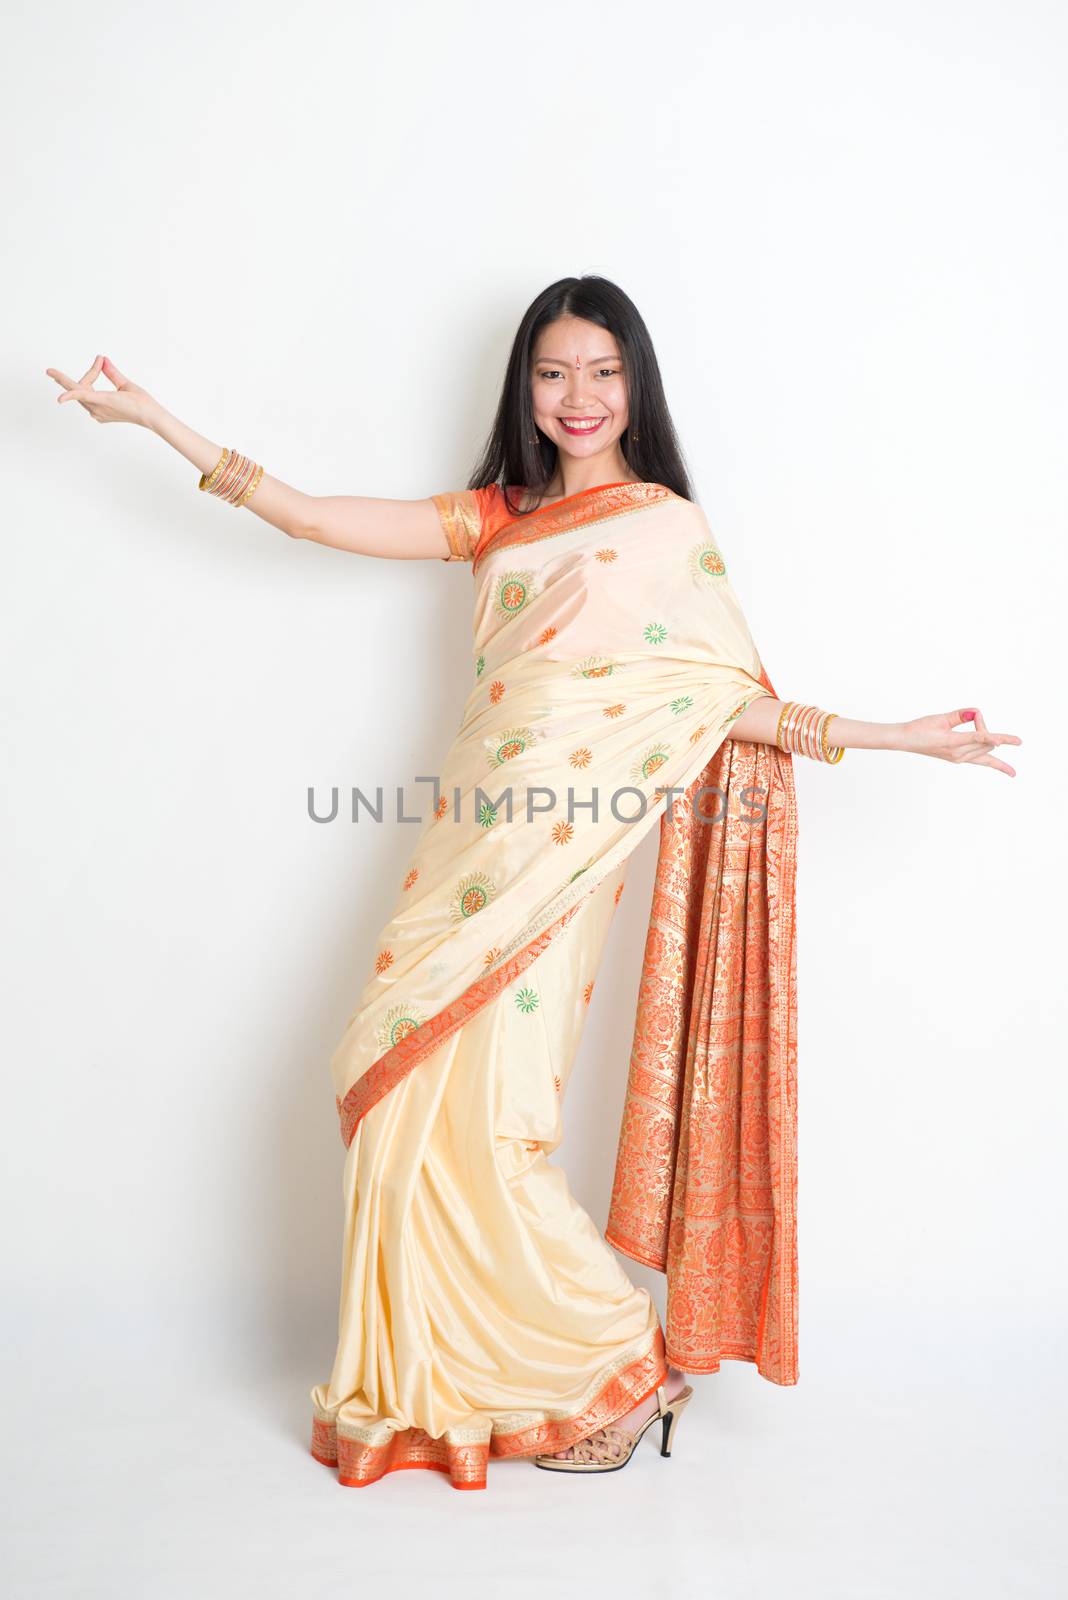 Young woman in Indian sari dress dancing by szefei